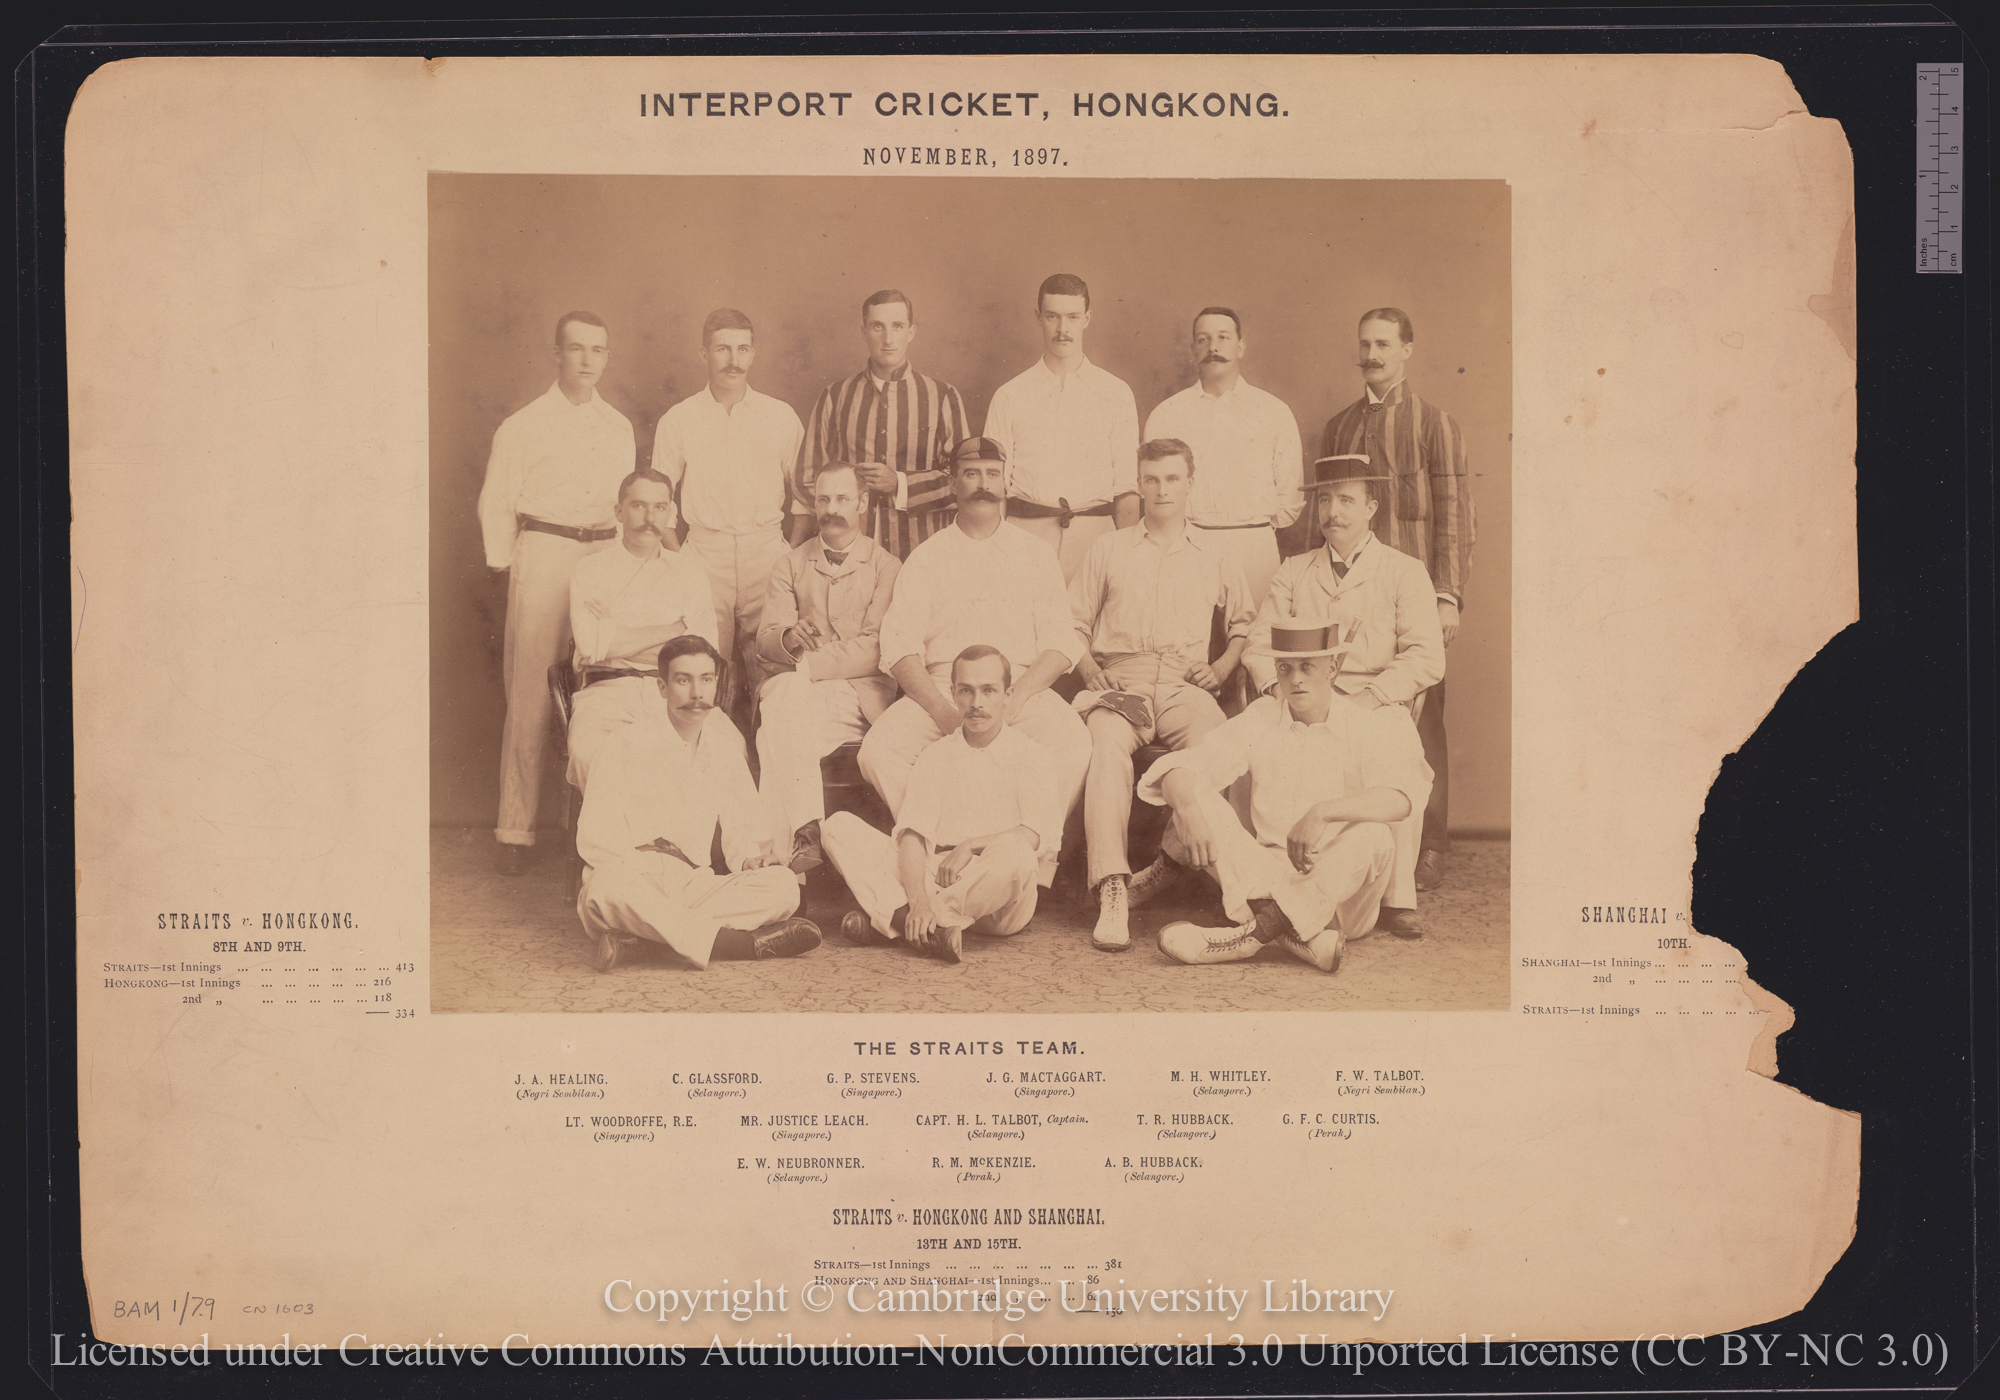 The Straits Team, Interport Cricket, Hong Kong, November 1897, 1897